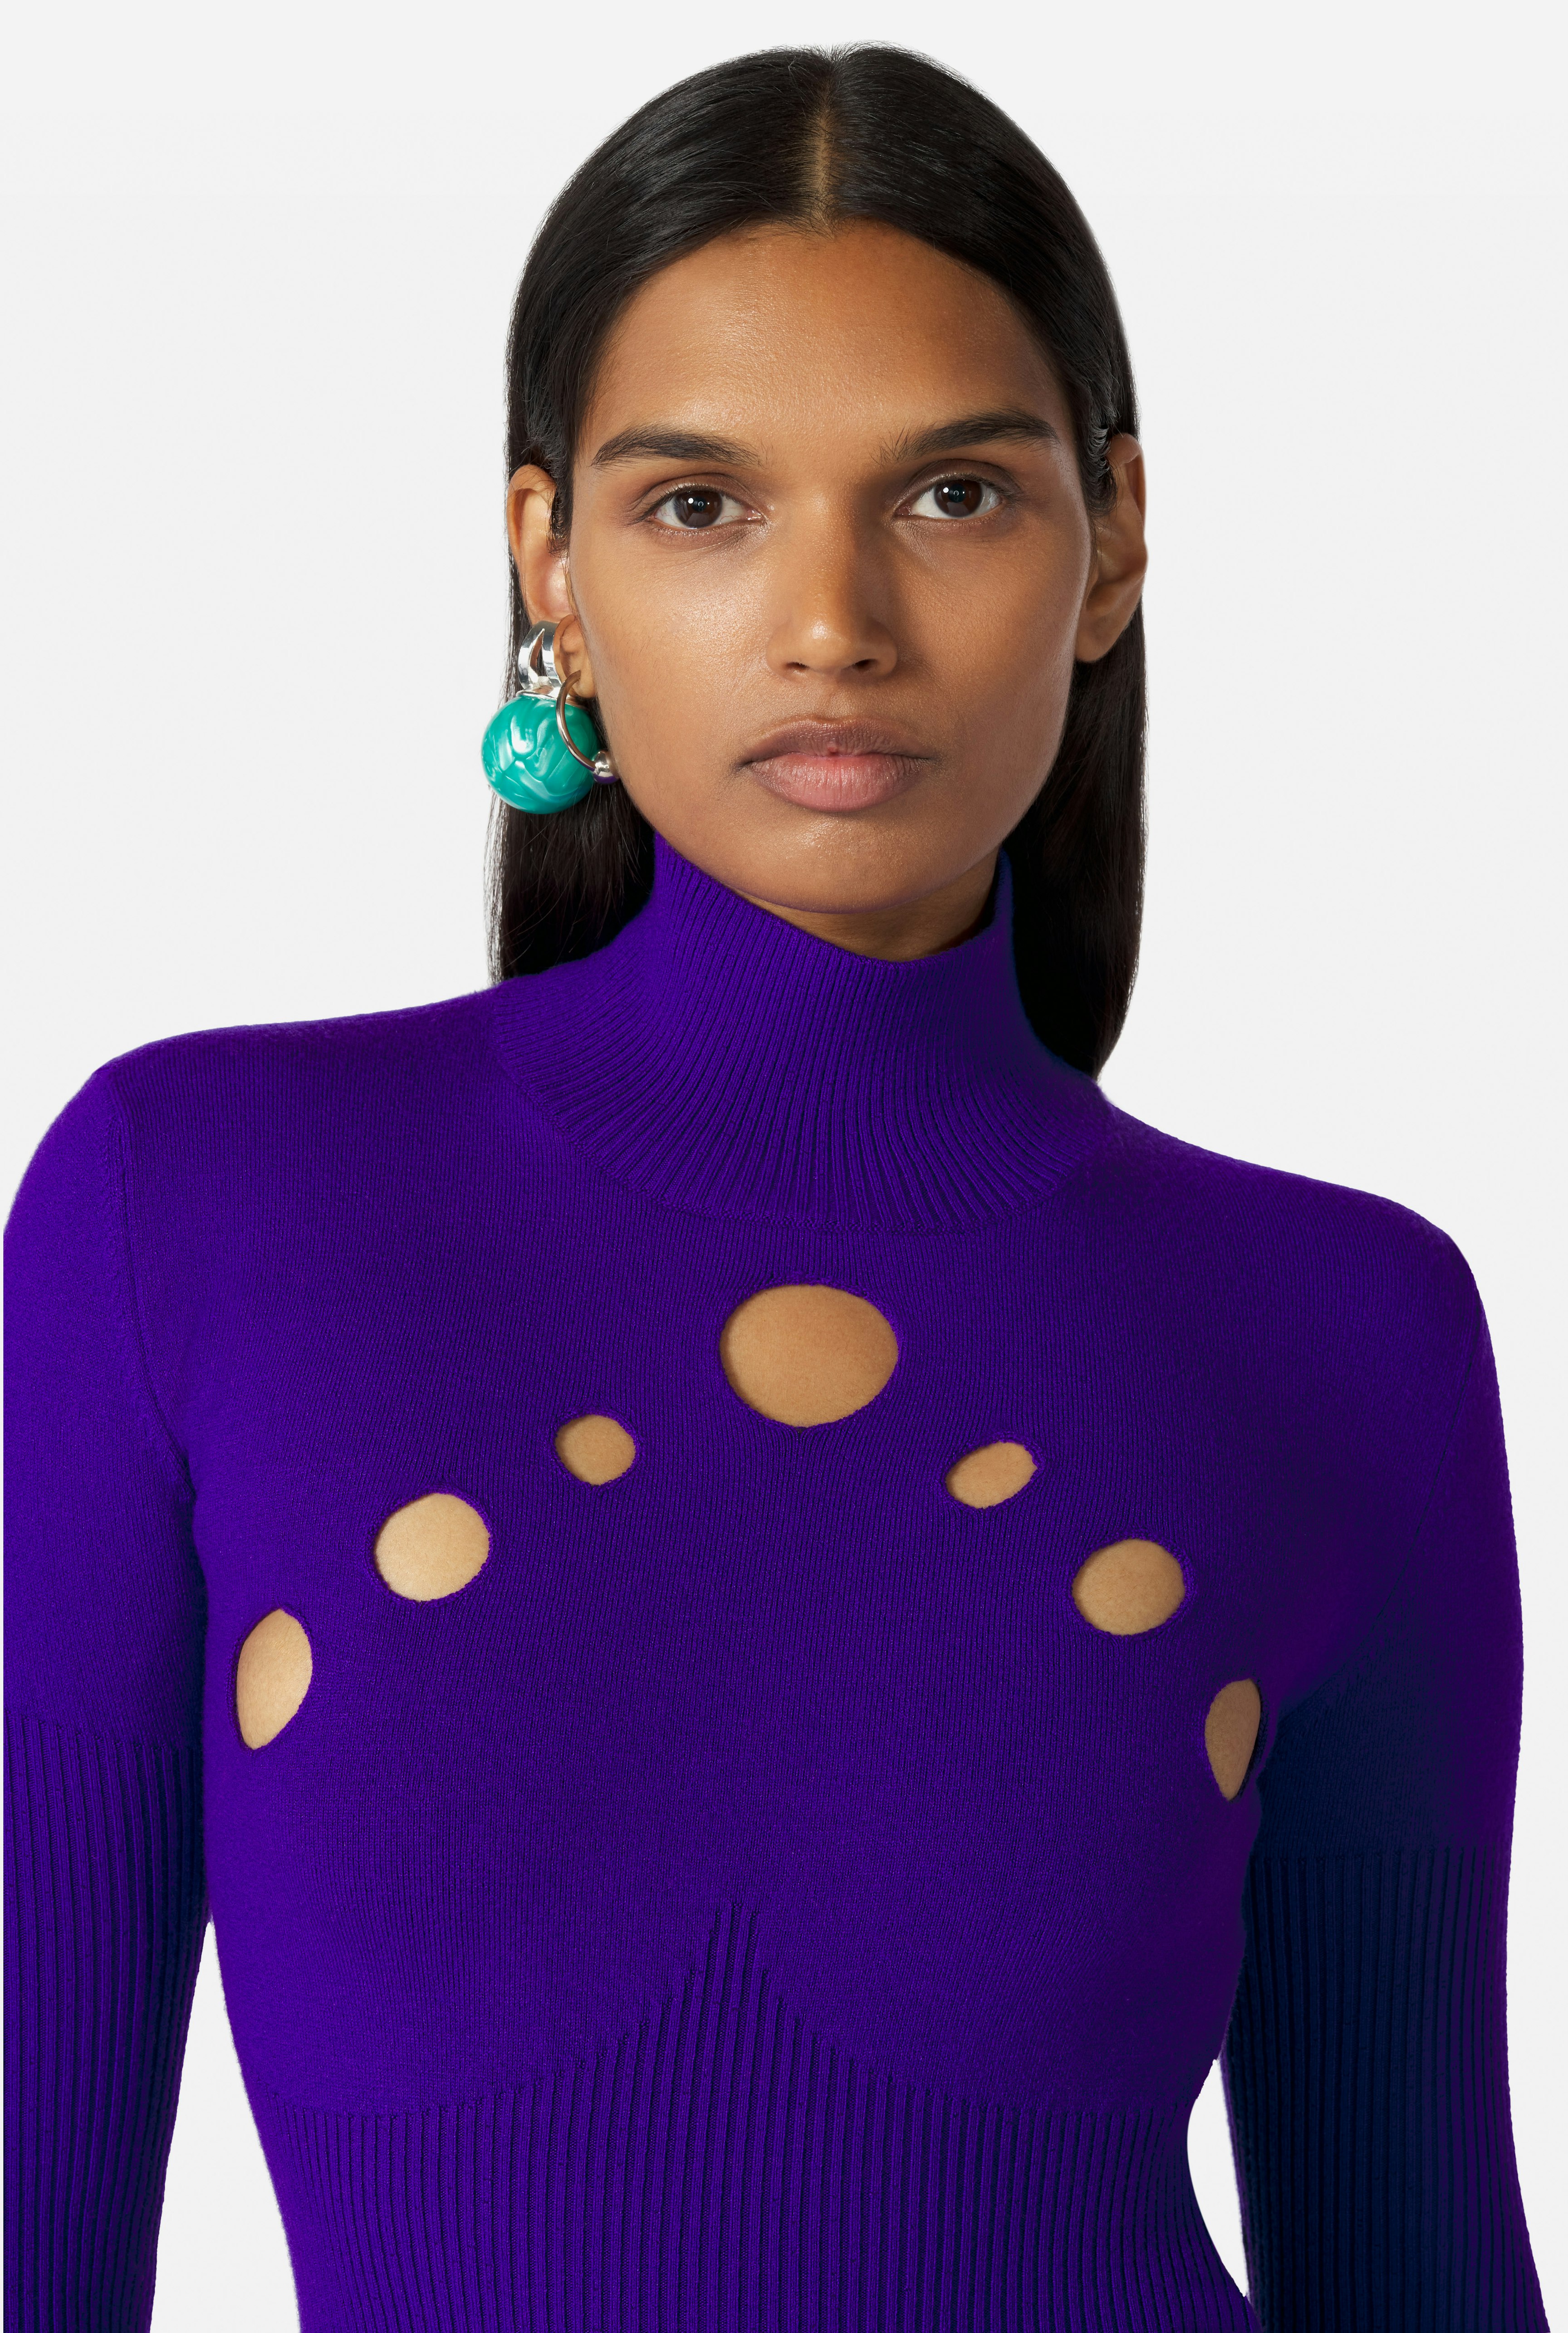 The Purple Openworked Knit Sweater Jean Paul Gaultier